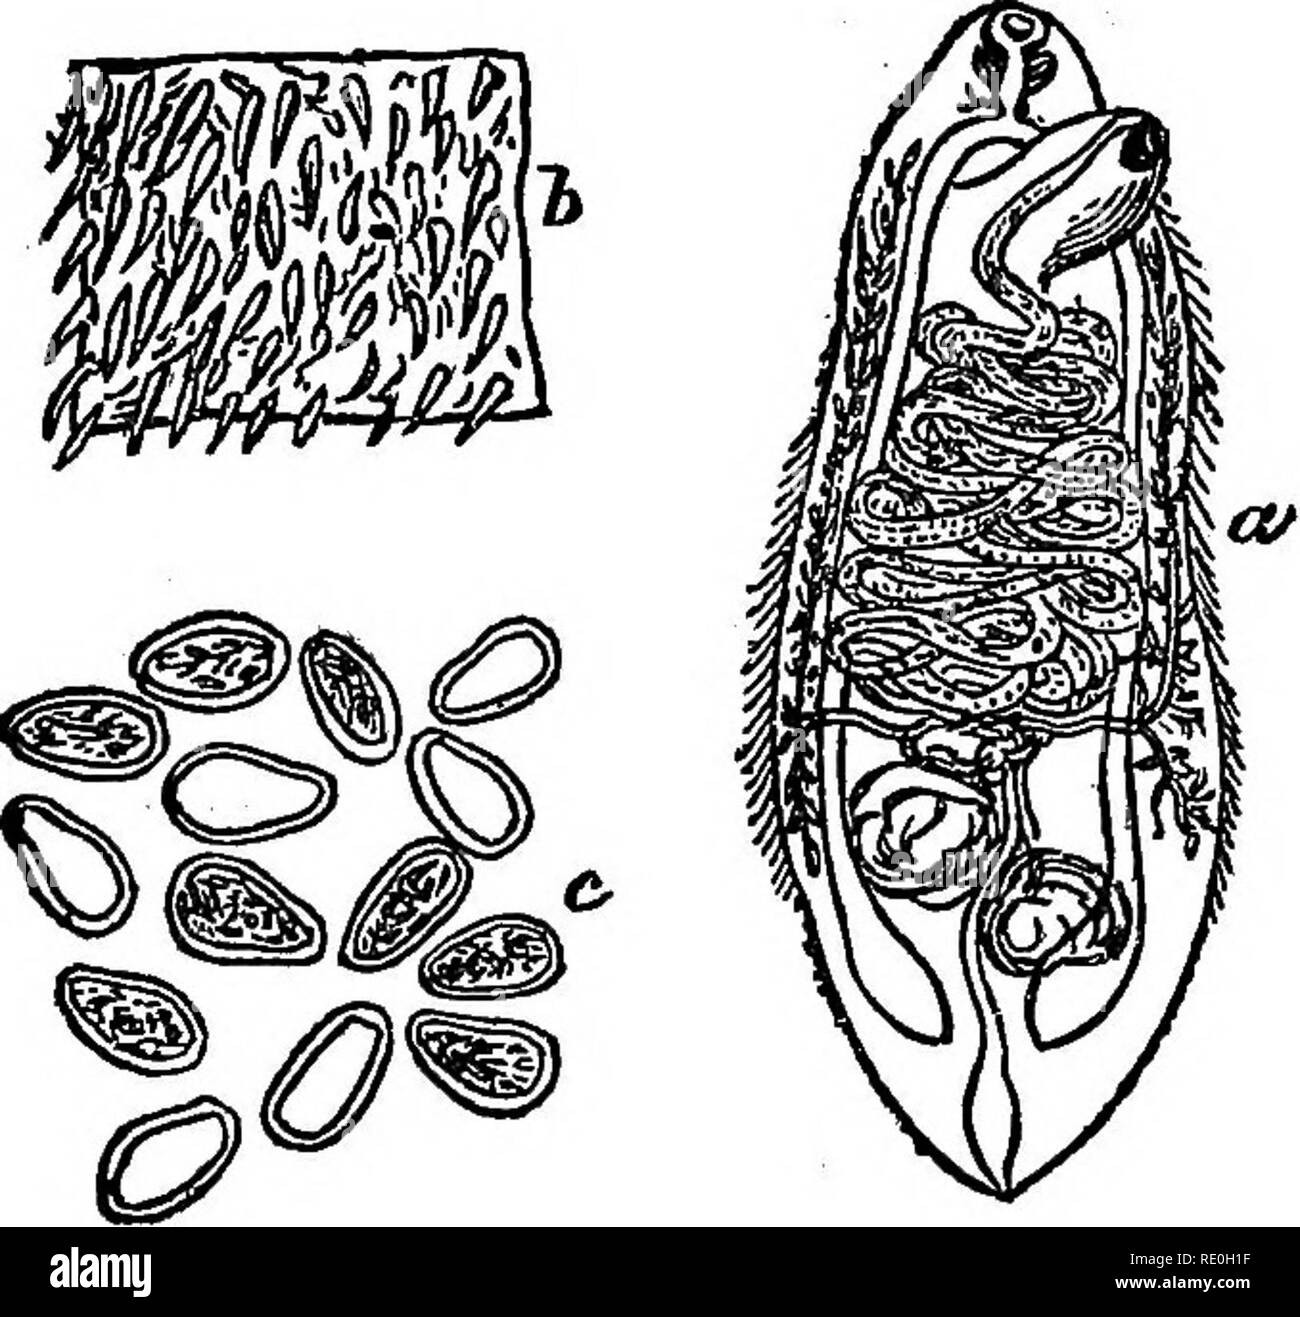 Parasites internes Banque d'images noir et blanc - Alamy